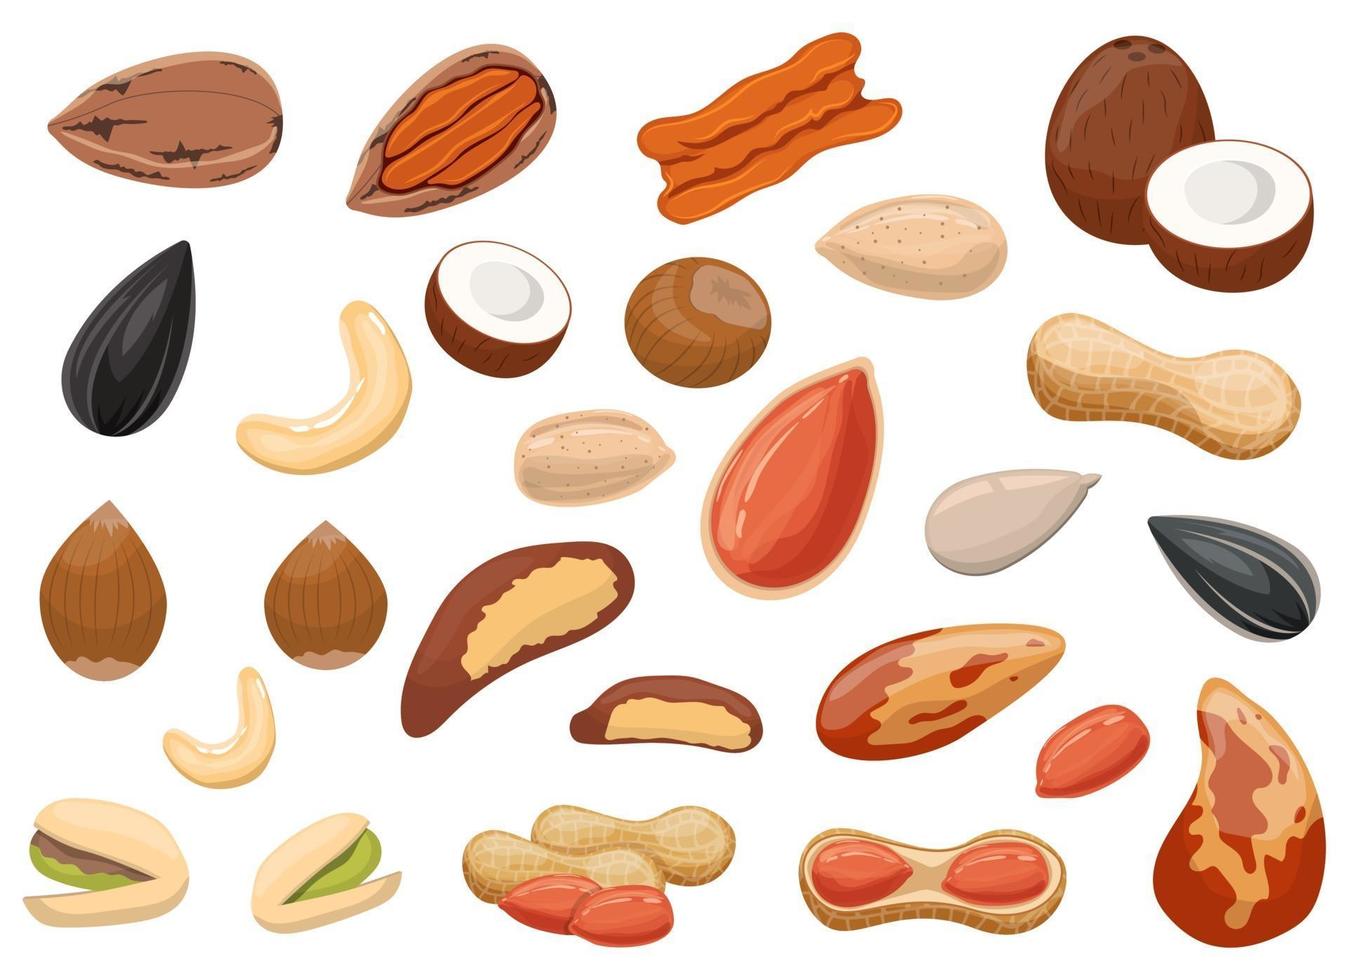 noci e arachidi impostare disegno vettoriale illustrazione insieme isolato su sfondo bianco